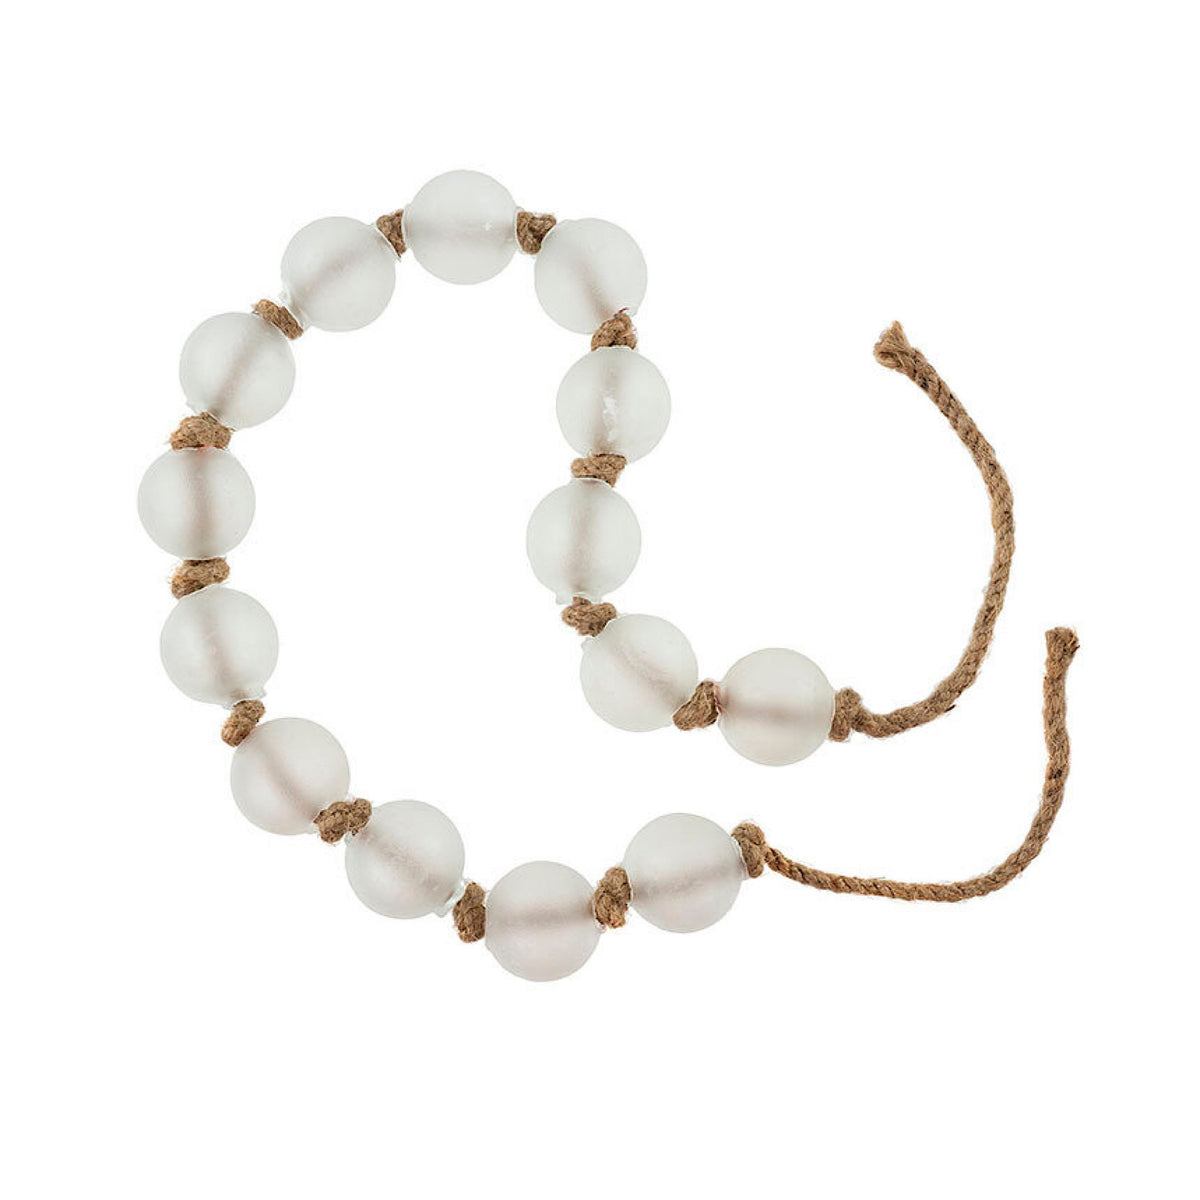 Beach Glass Beads, White